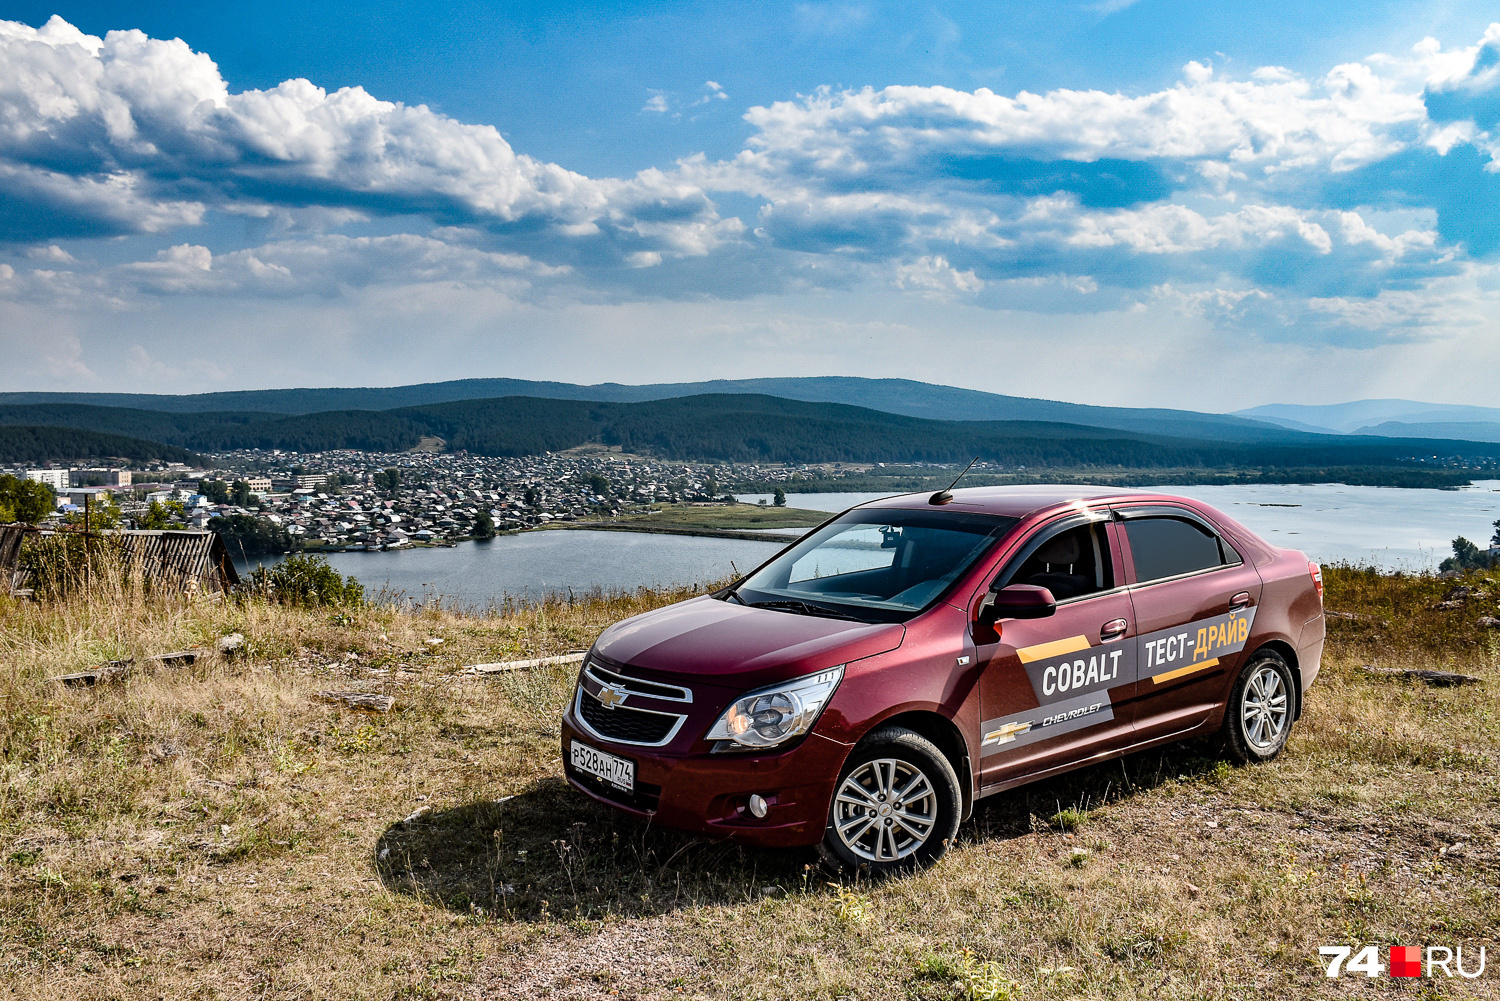 Chevrolet Cobalt дважды приходил в Россию, в 2011 и 2020 годах, но оба раза успеха не имел, в отличие от моделей вроде Aveo или Lacetti